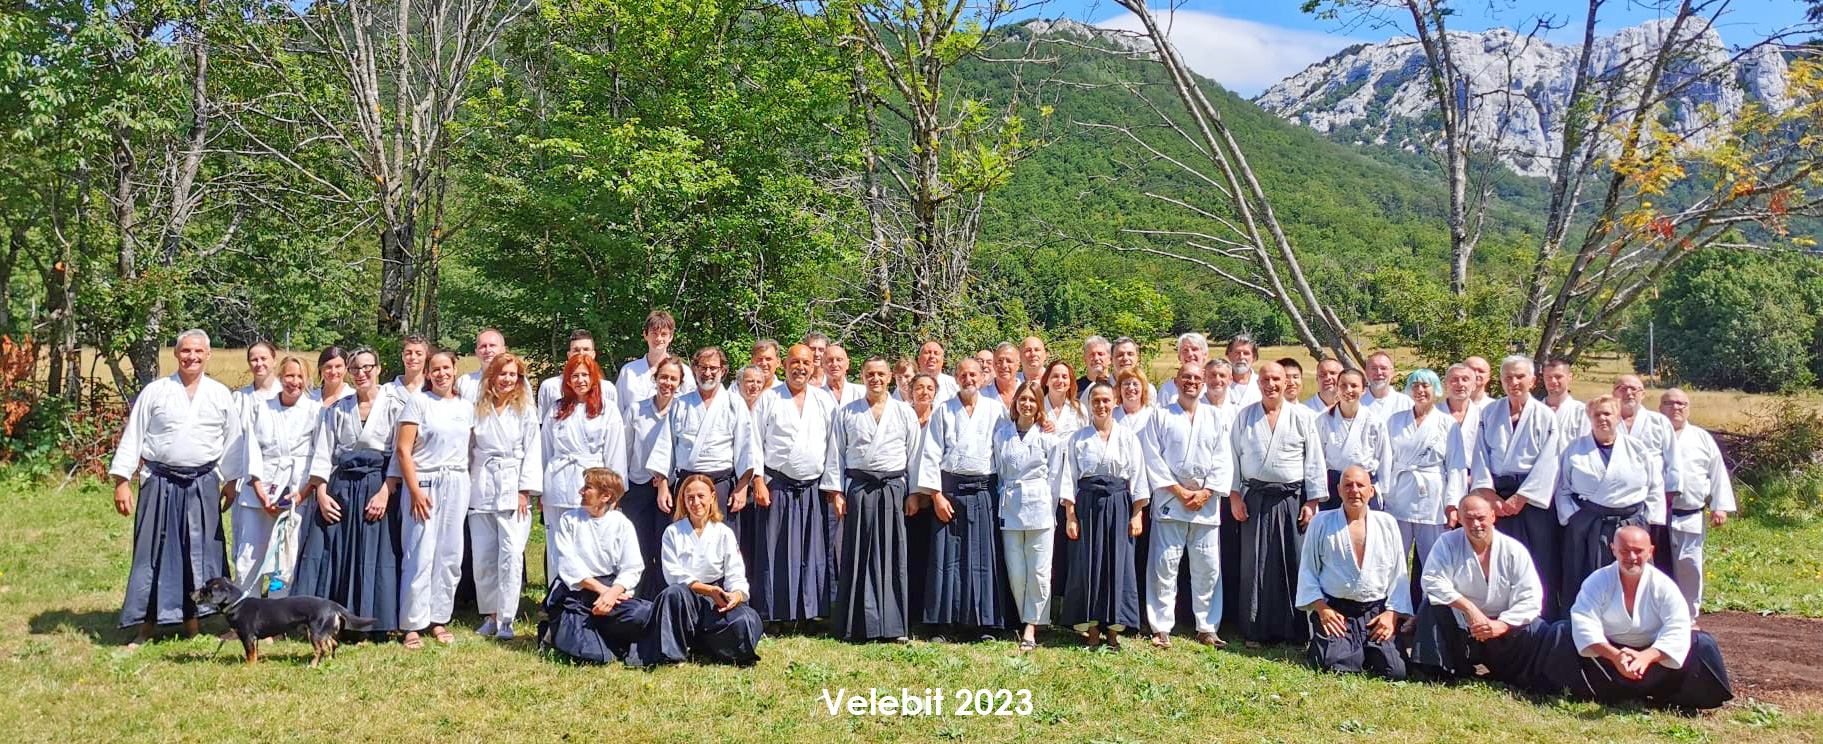 Seminar in Velebit 08/2023